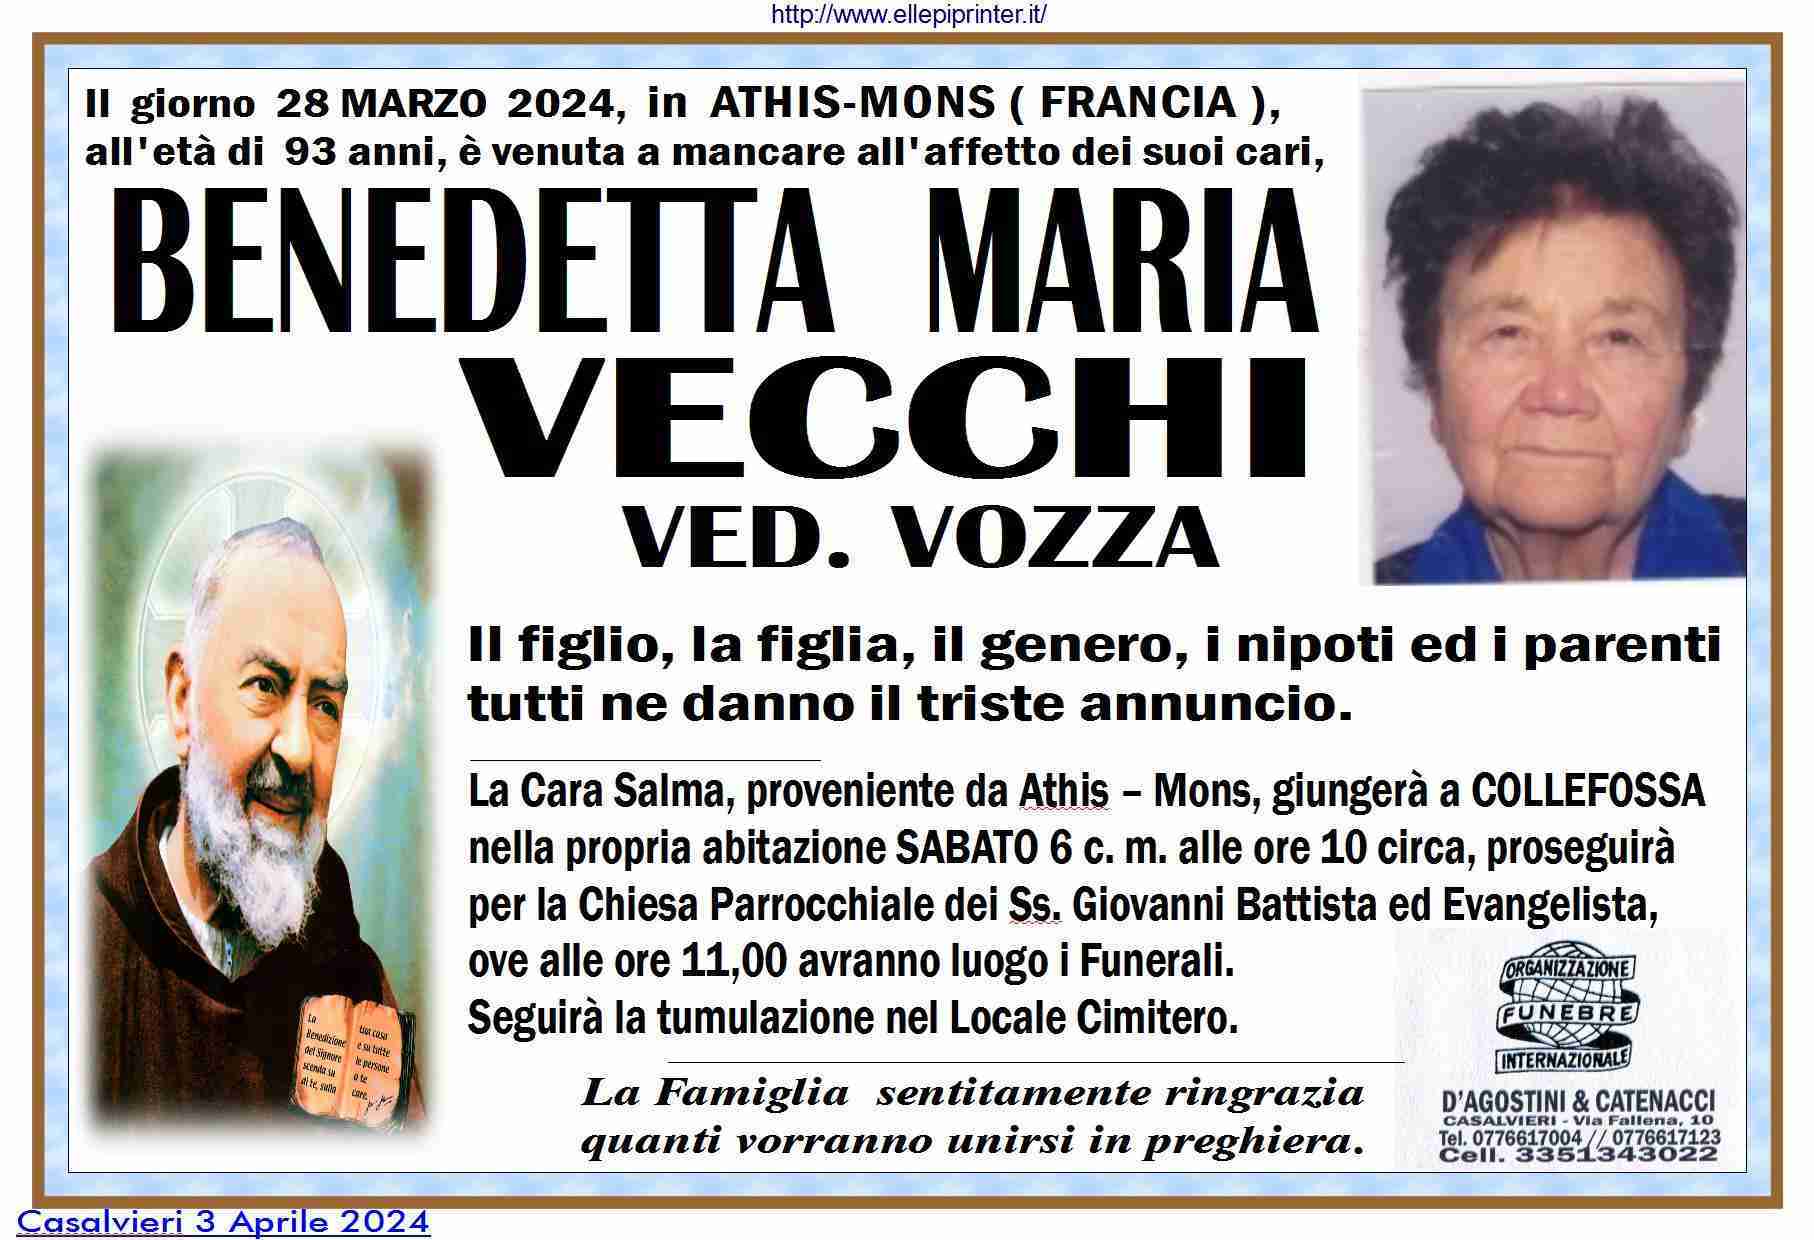 Benedetta Maria Vecchi